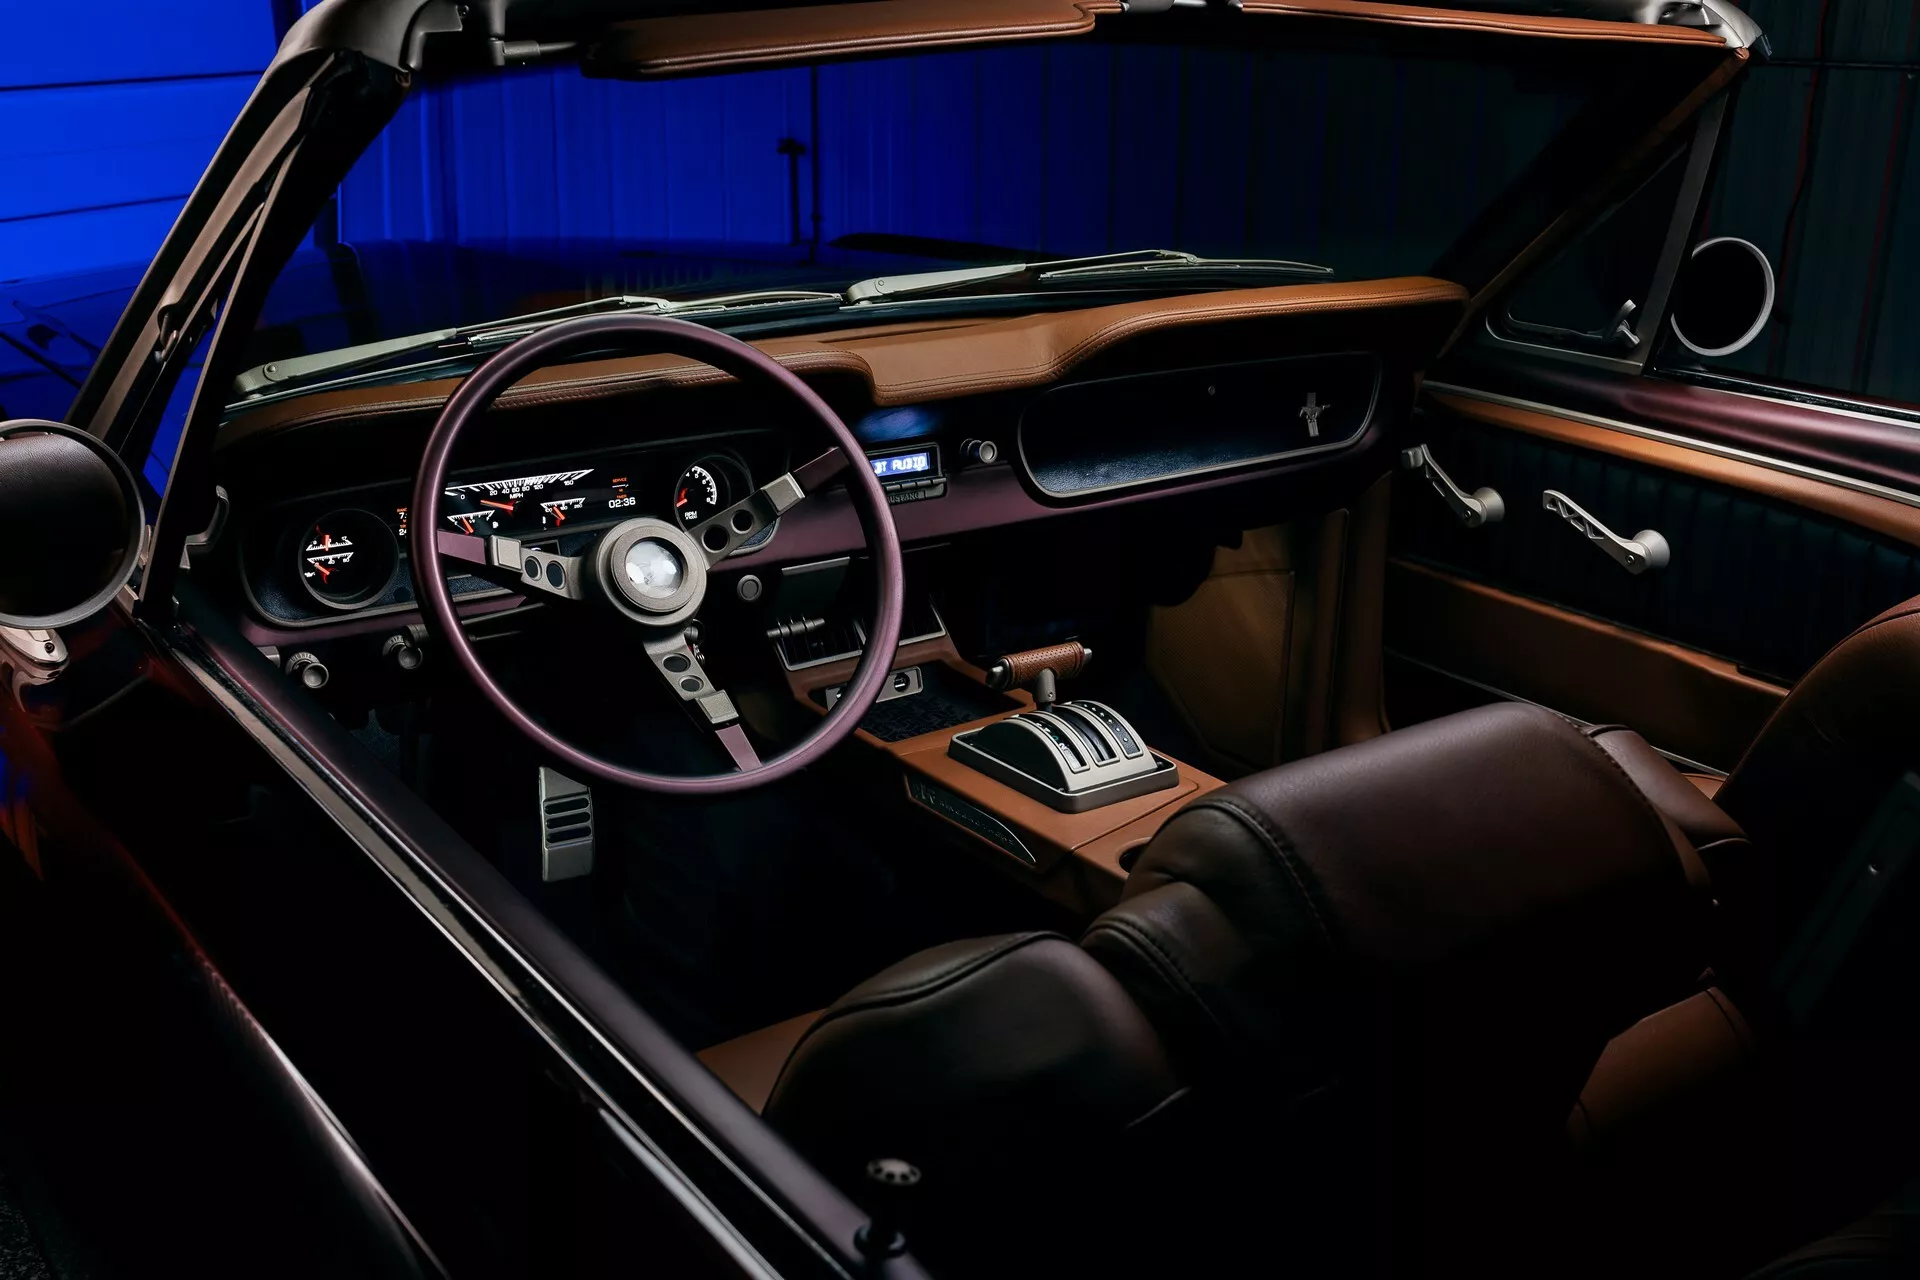 تدشين واحدة من أجمل سيارات فورد موستنج الكلاسيكية في معرض سيما الأمريكي بمحرك 8 سلندر عصري 7